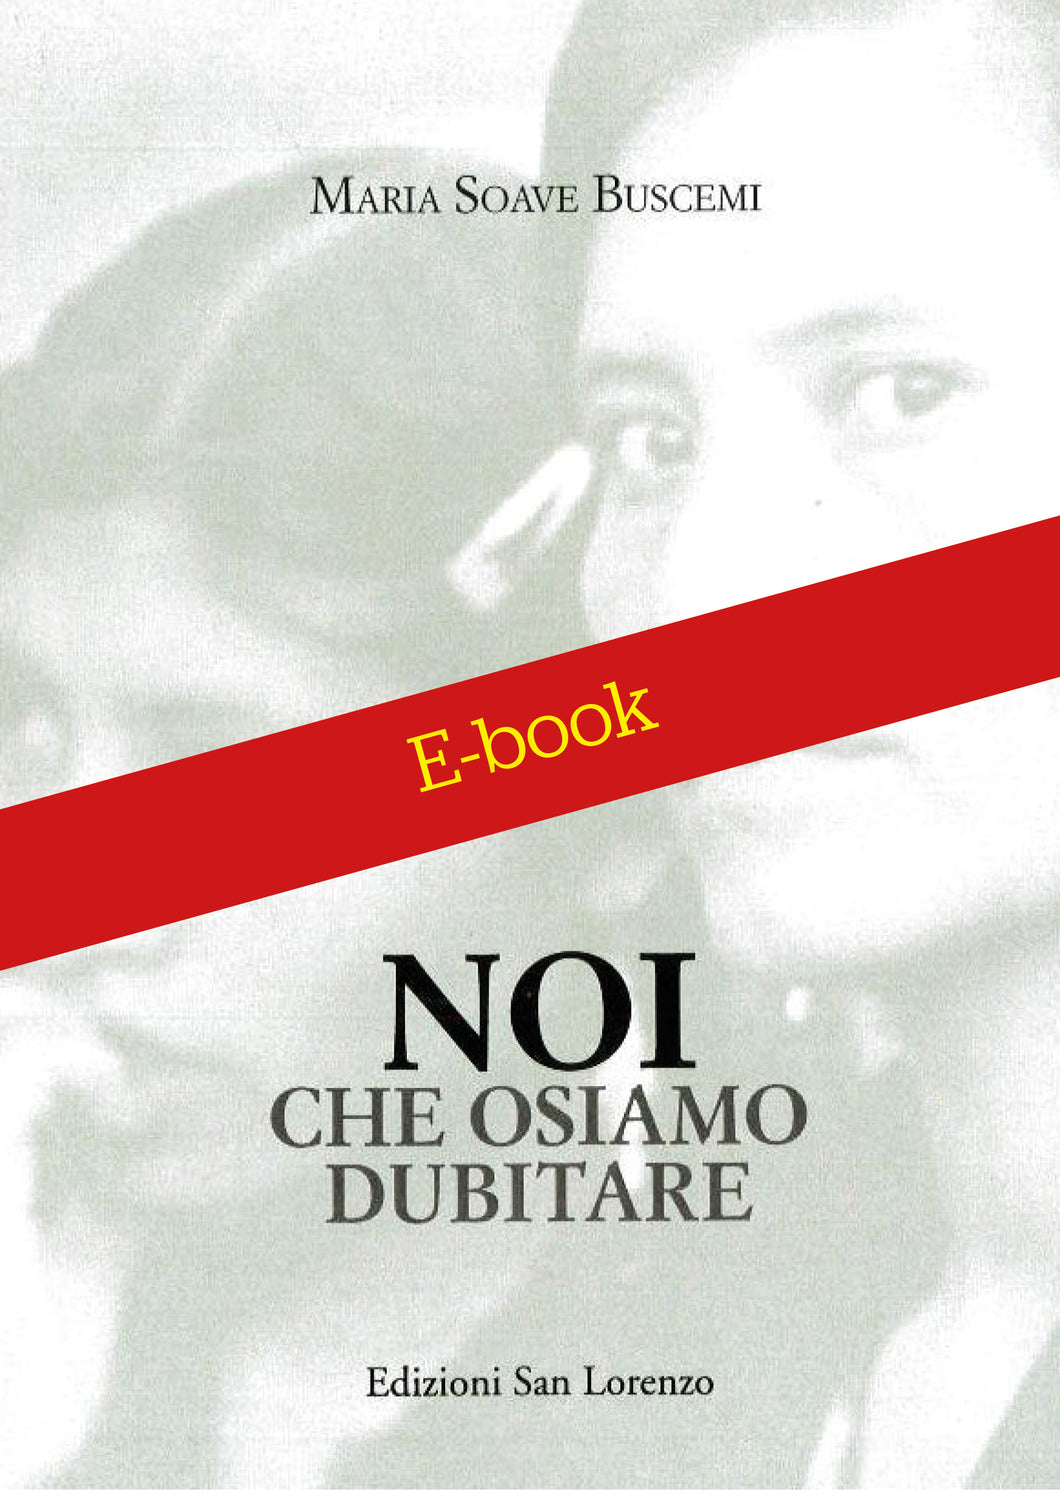 Maria Soave Buscemi - NOI CHE OSIAMO DUBITARE - E-BOOK - Edizioni San Lorenzo